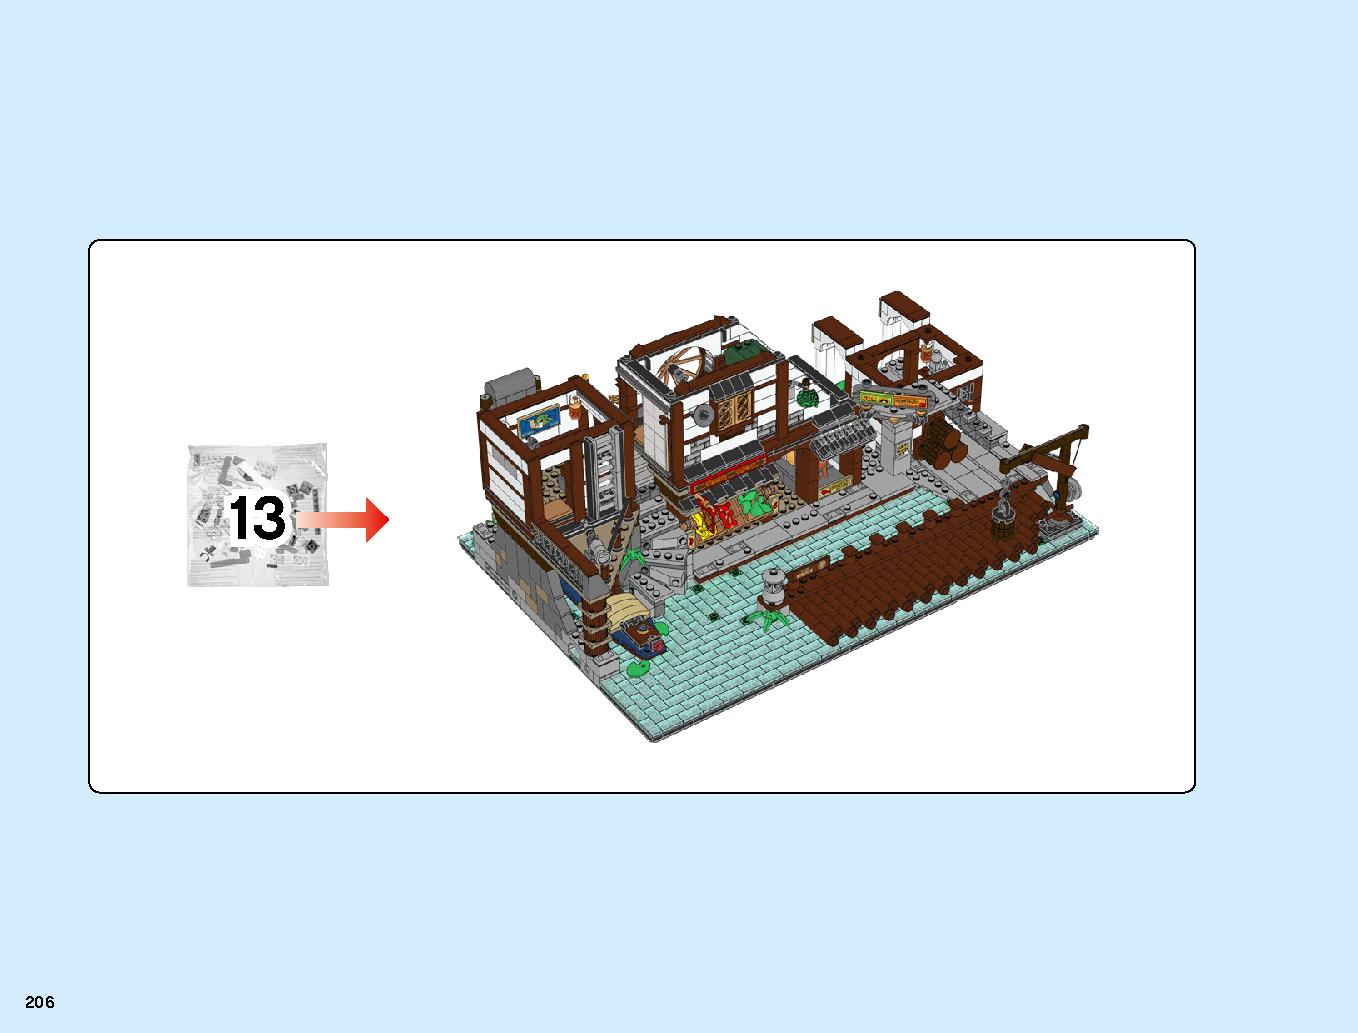 ニンジャゴーシティ・ポートパーク 70657 レゴの商品情報 レゴの説明書・組立方法 206 page